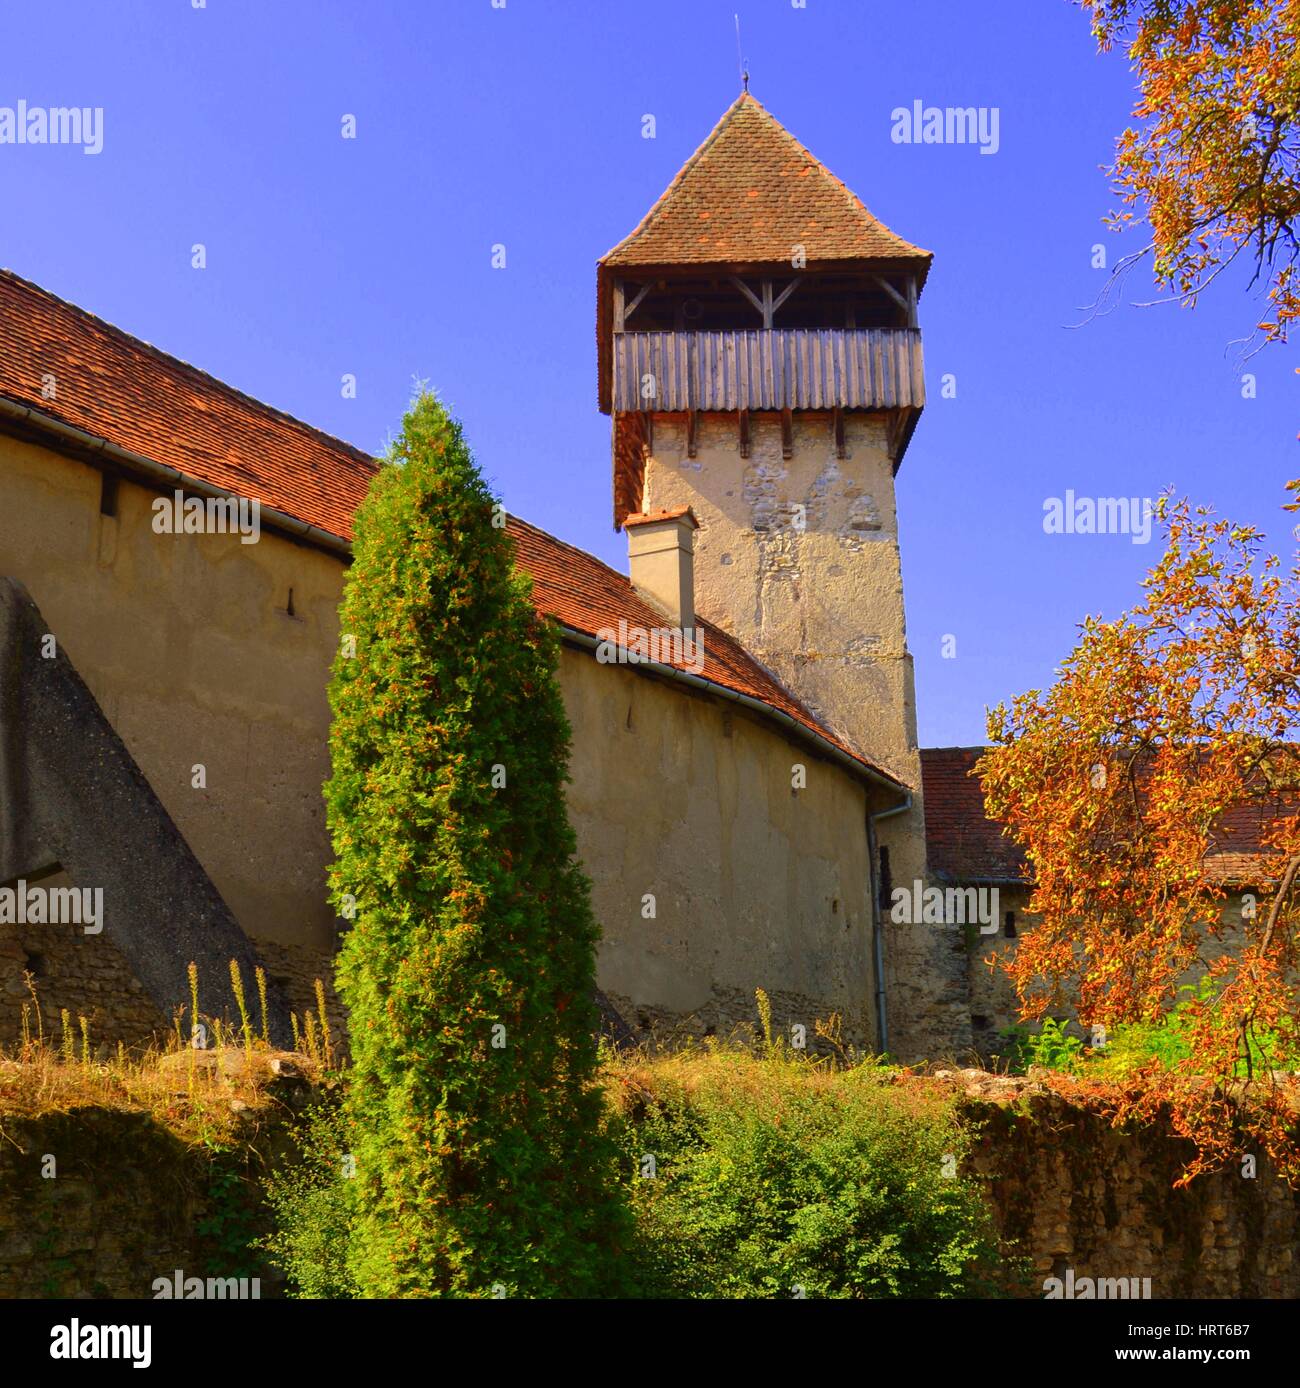 Cour intérieure de l'église saxonne fortifiée médiévale dans la région de Tulcea, Transylvanie, est connu pour son château, qui est sur la liste du patrimoine mondial. Banque D'Images